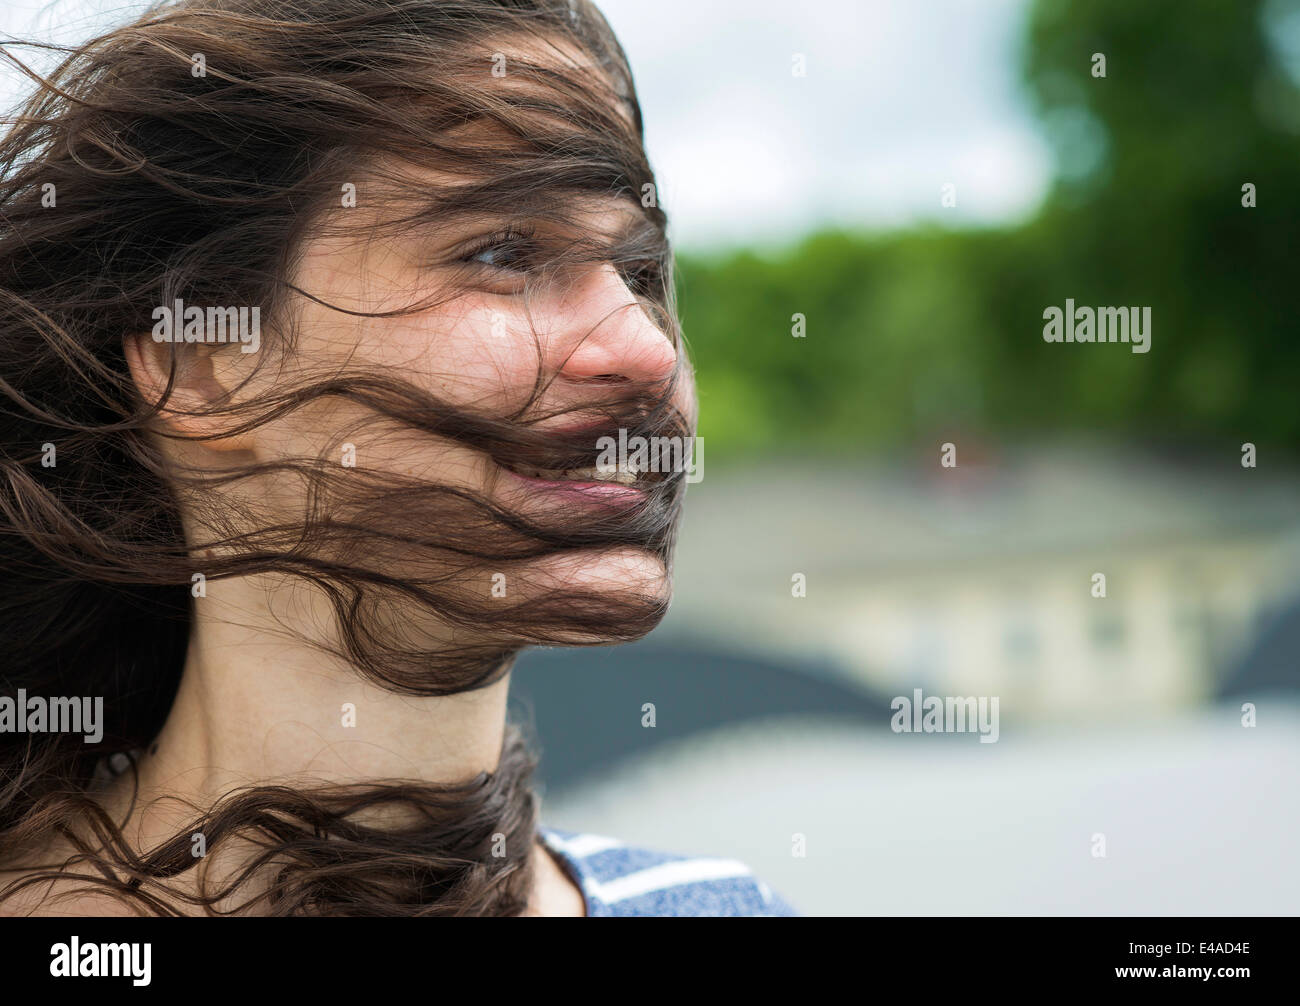 Retrato de mujer sonriente con mechones de pelo en su cara Foto de stock